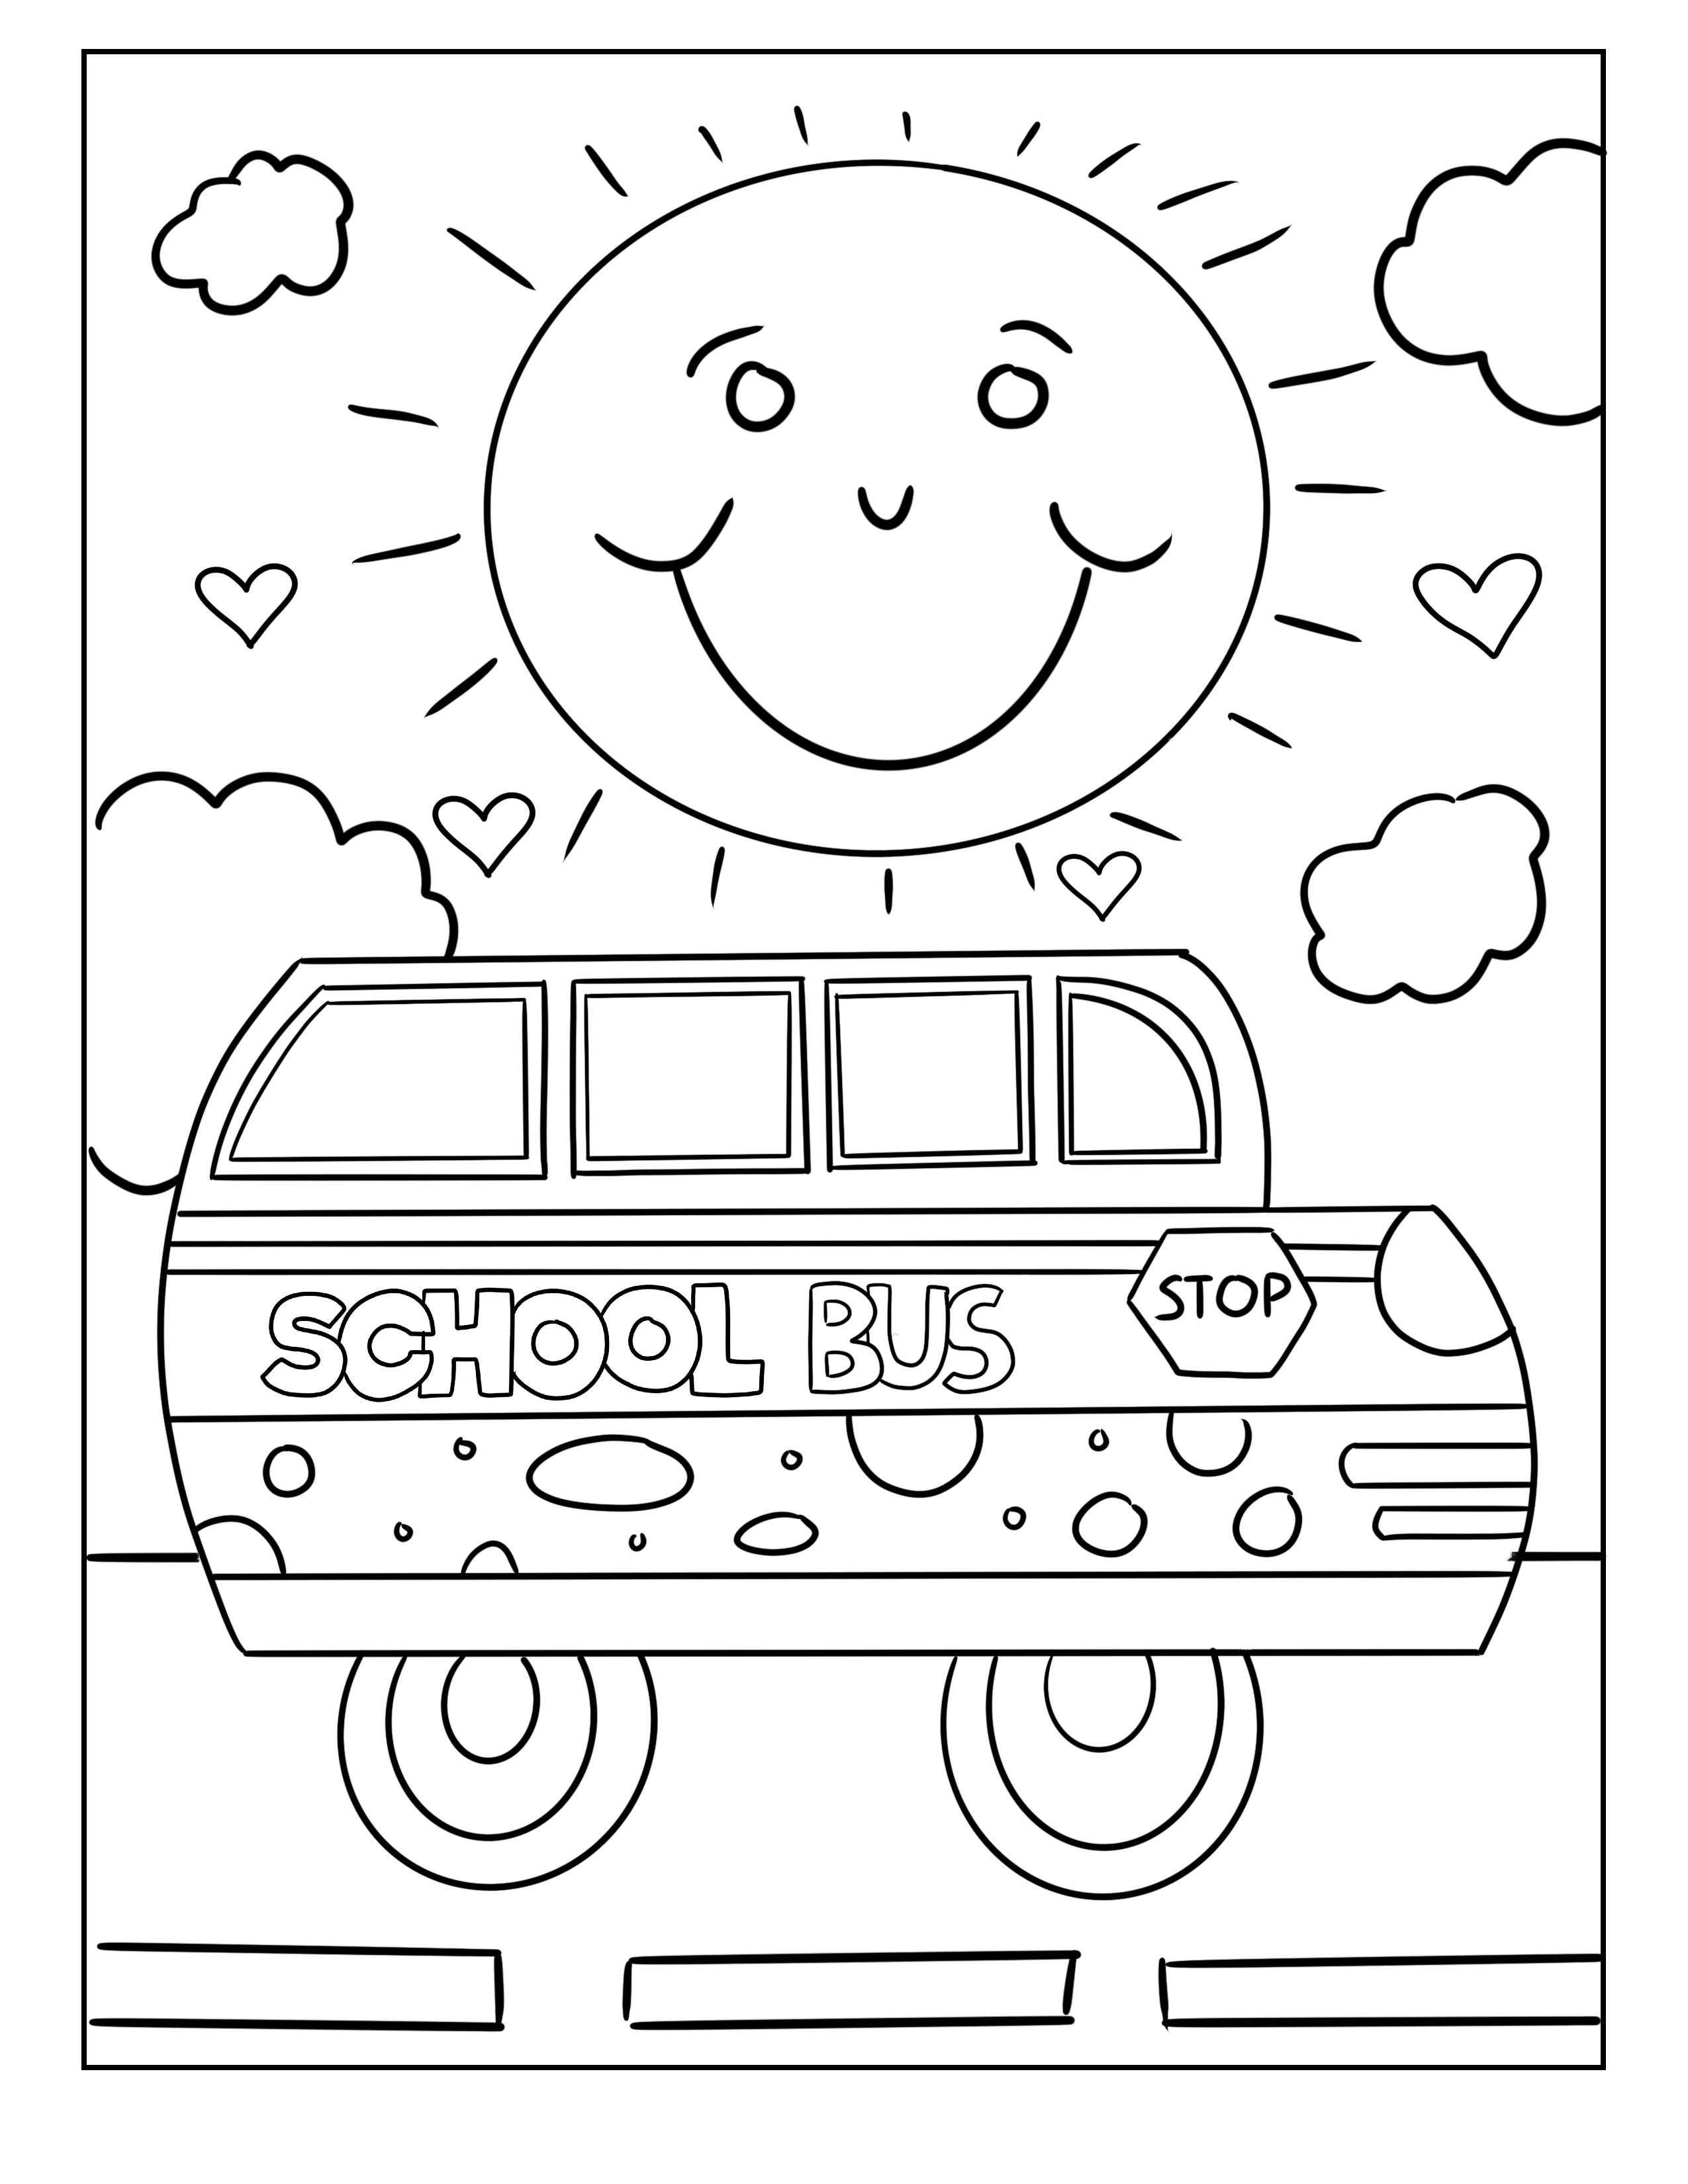 Tranh tô màu xe buýt trường học